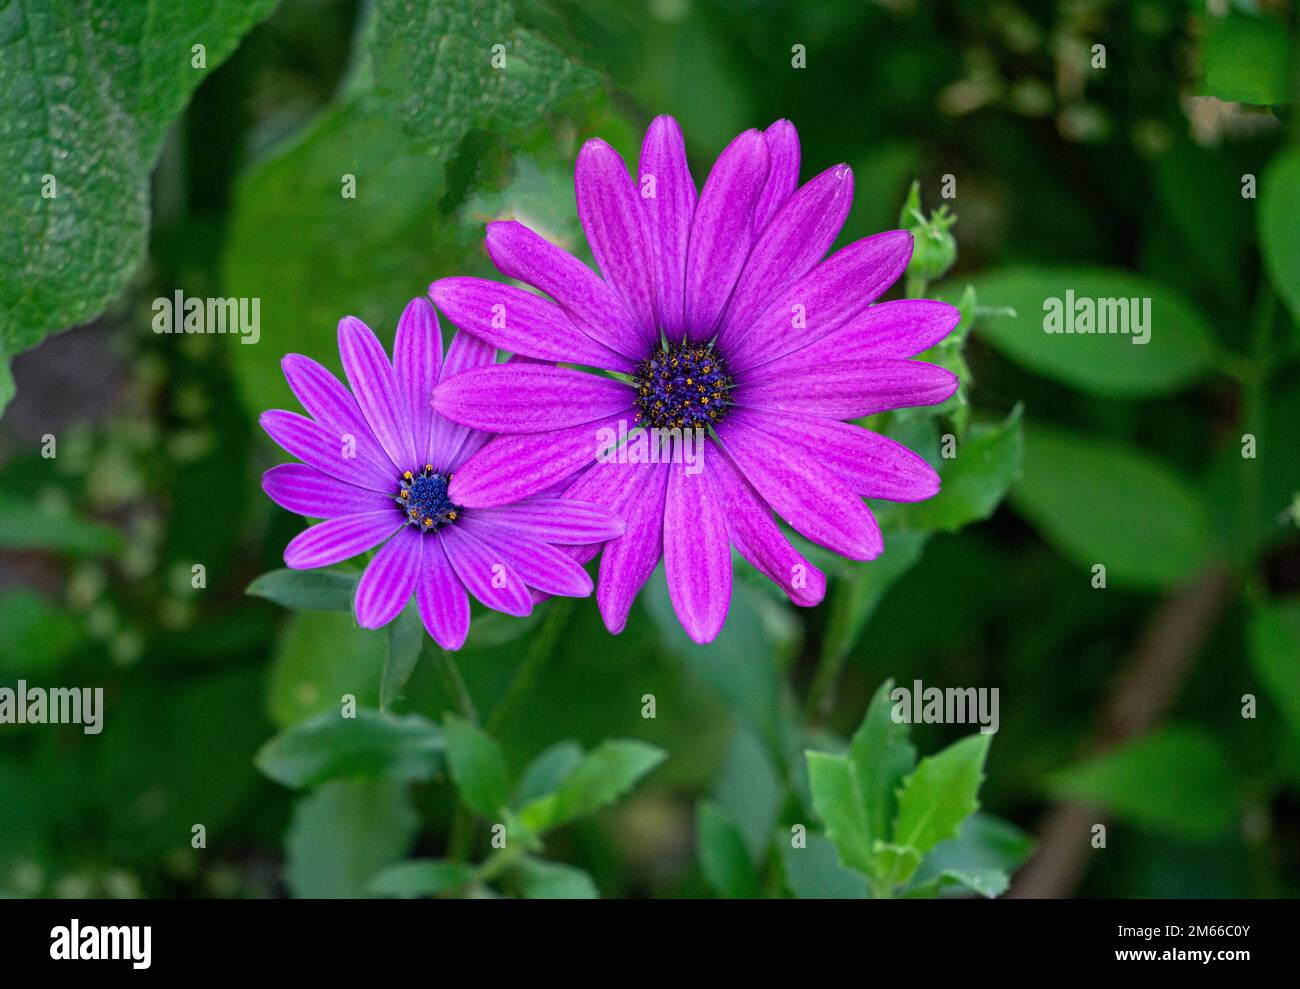 Wunderschöne lila Blumen, die den Gerberas in einem Blumengarten ähneln. Stockfoto